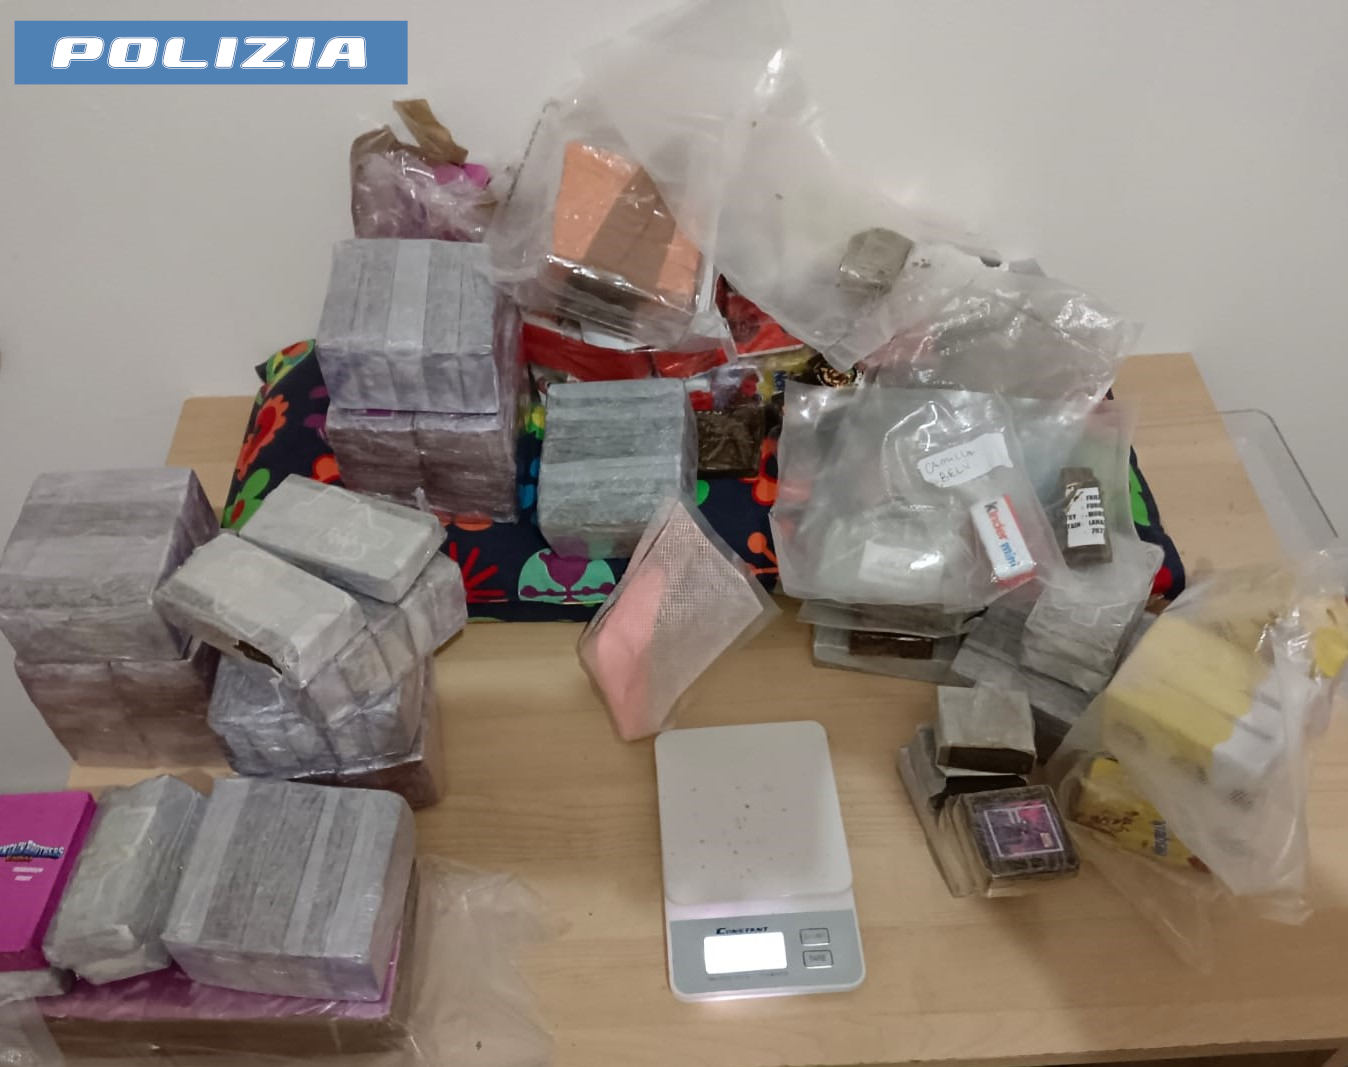 Roma, spaccia la "tusi", la cocaina rosa che costa 300 euro a dose: casalinga-pusher in carcere 1